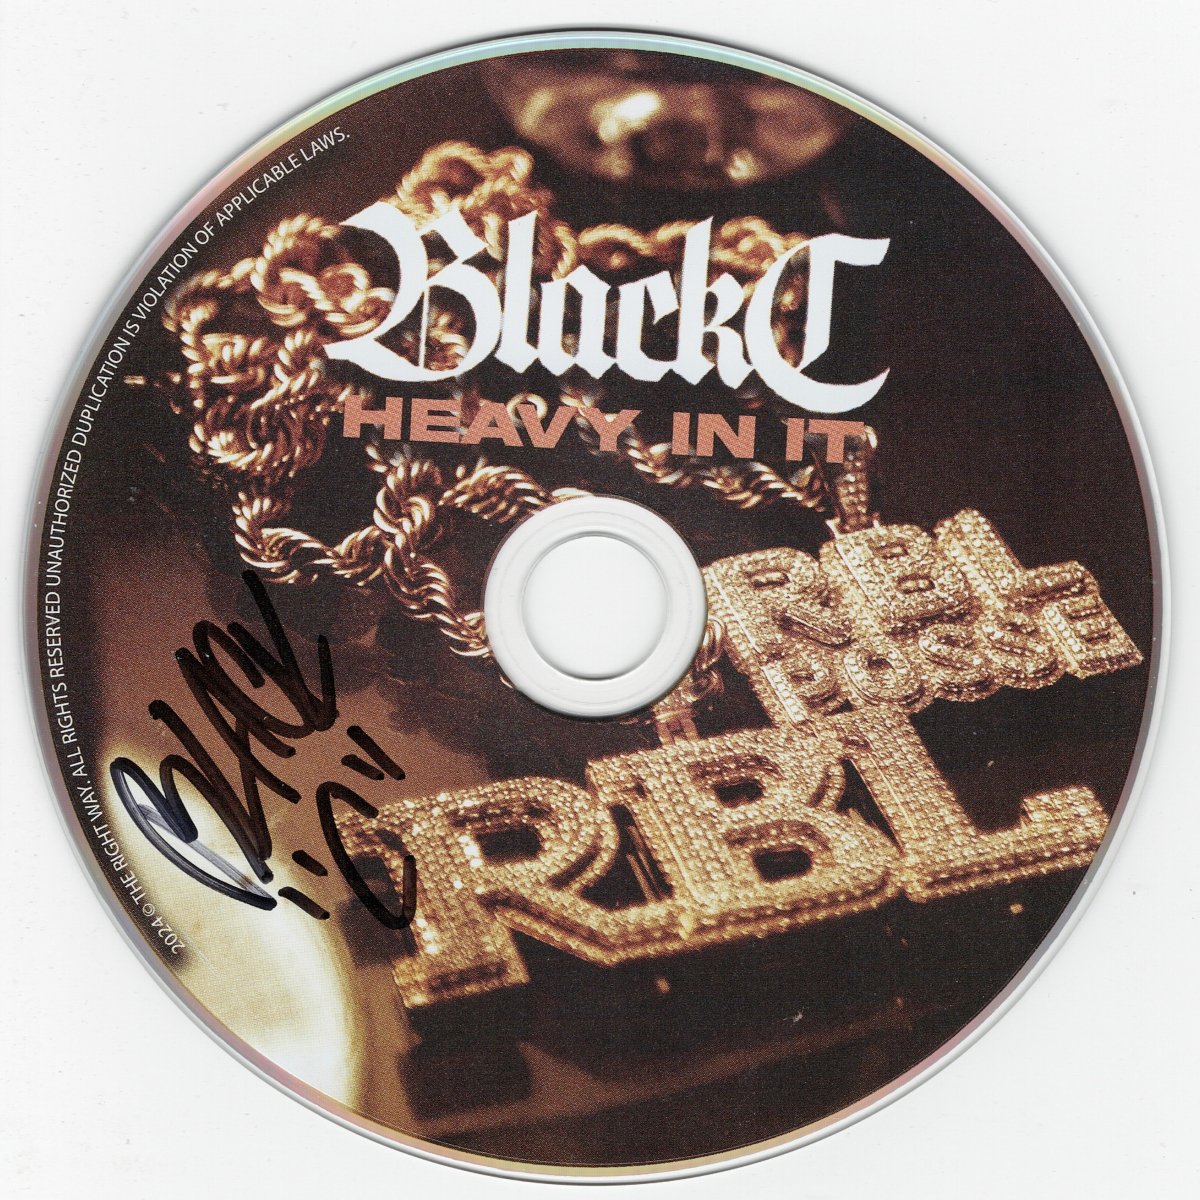 Black_C_Heavy_In_It_Disc